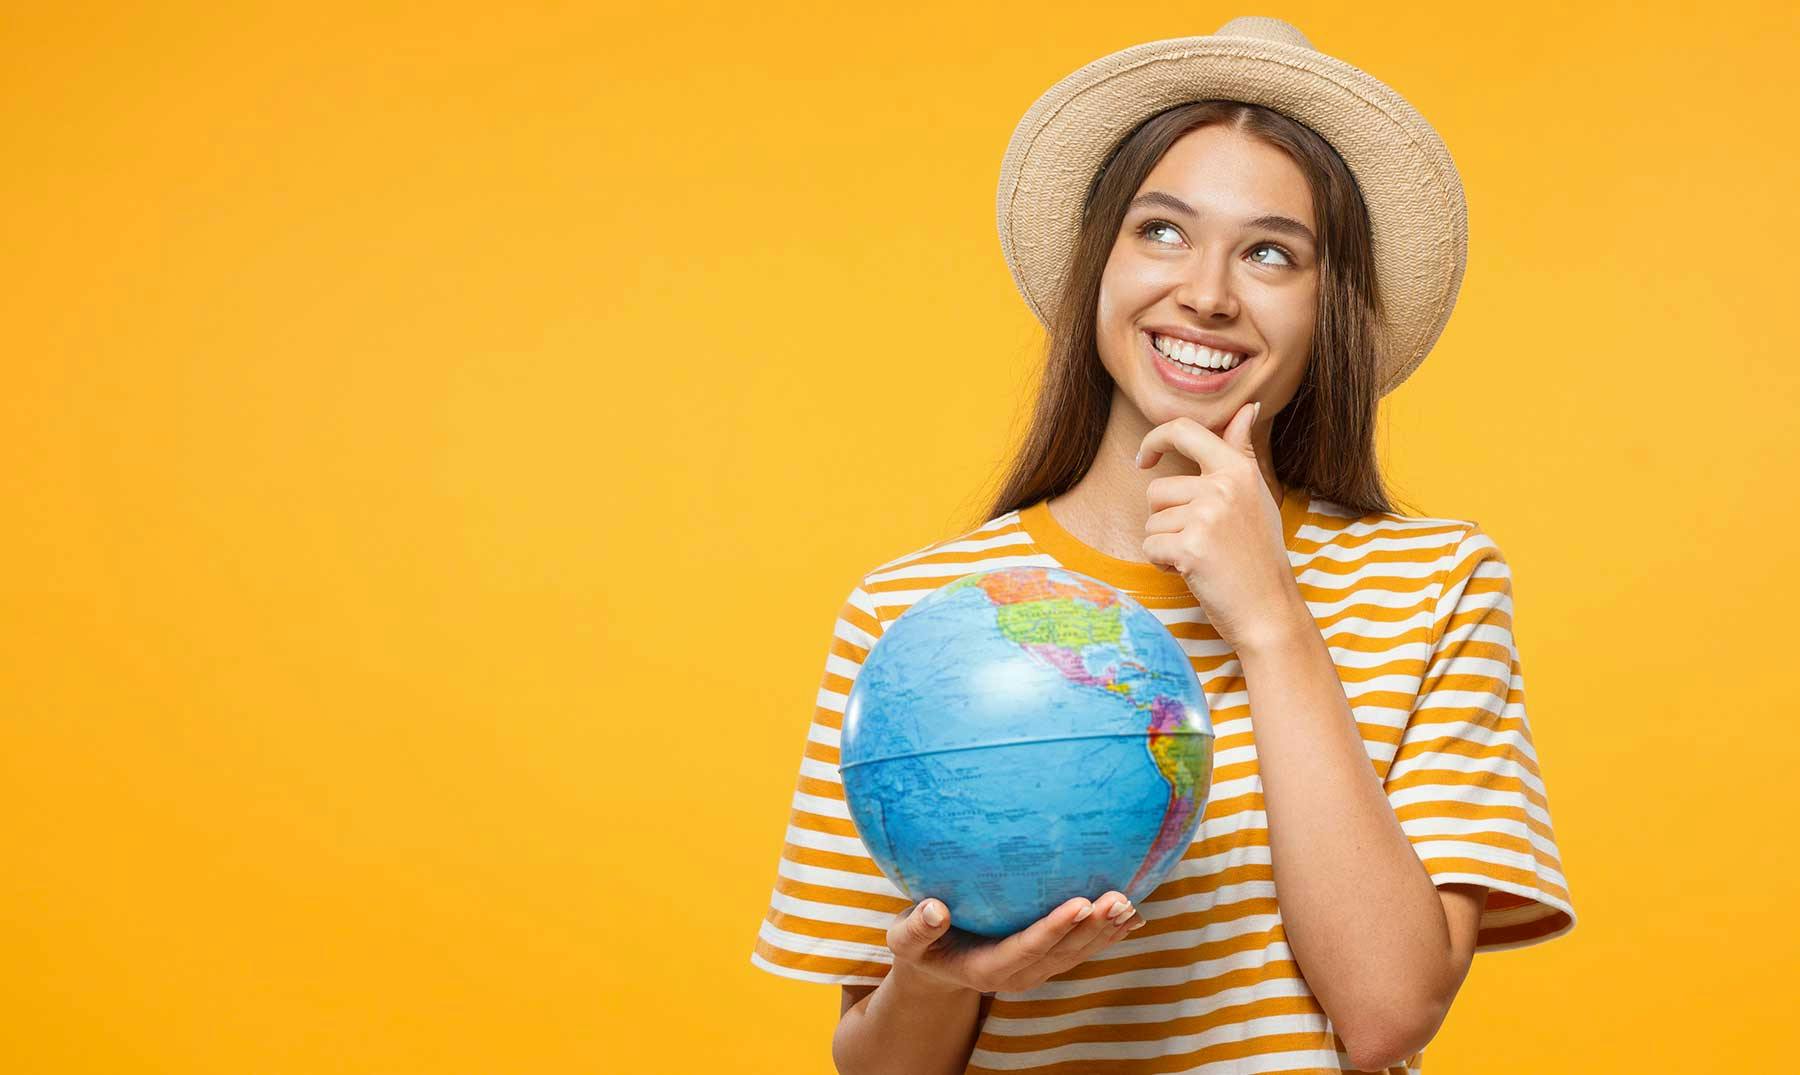 Trabajos para viajar | 5 Empleos para quienes aman recorrer el mundo